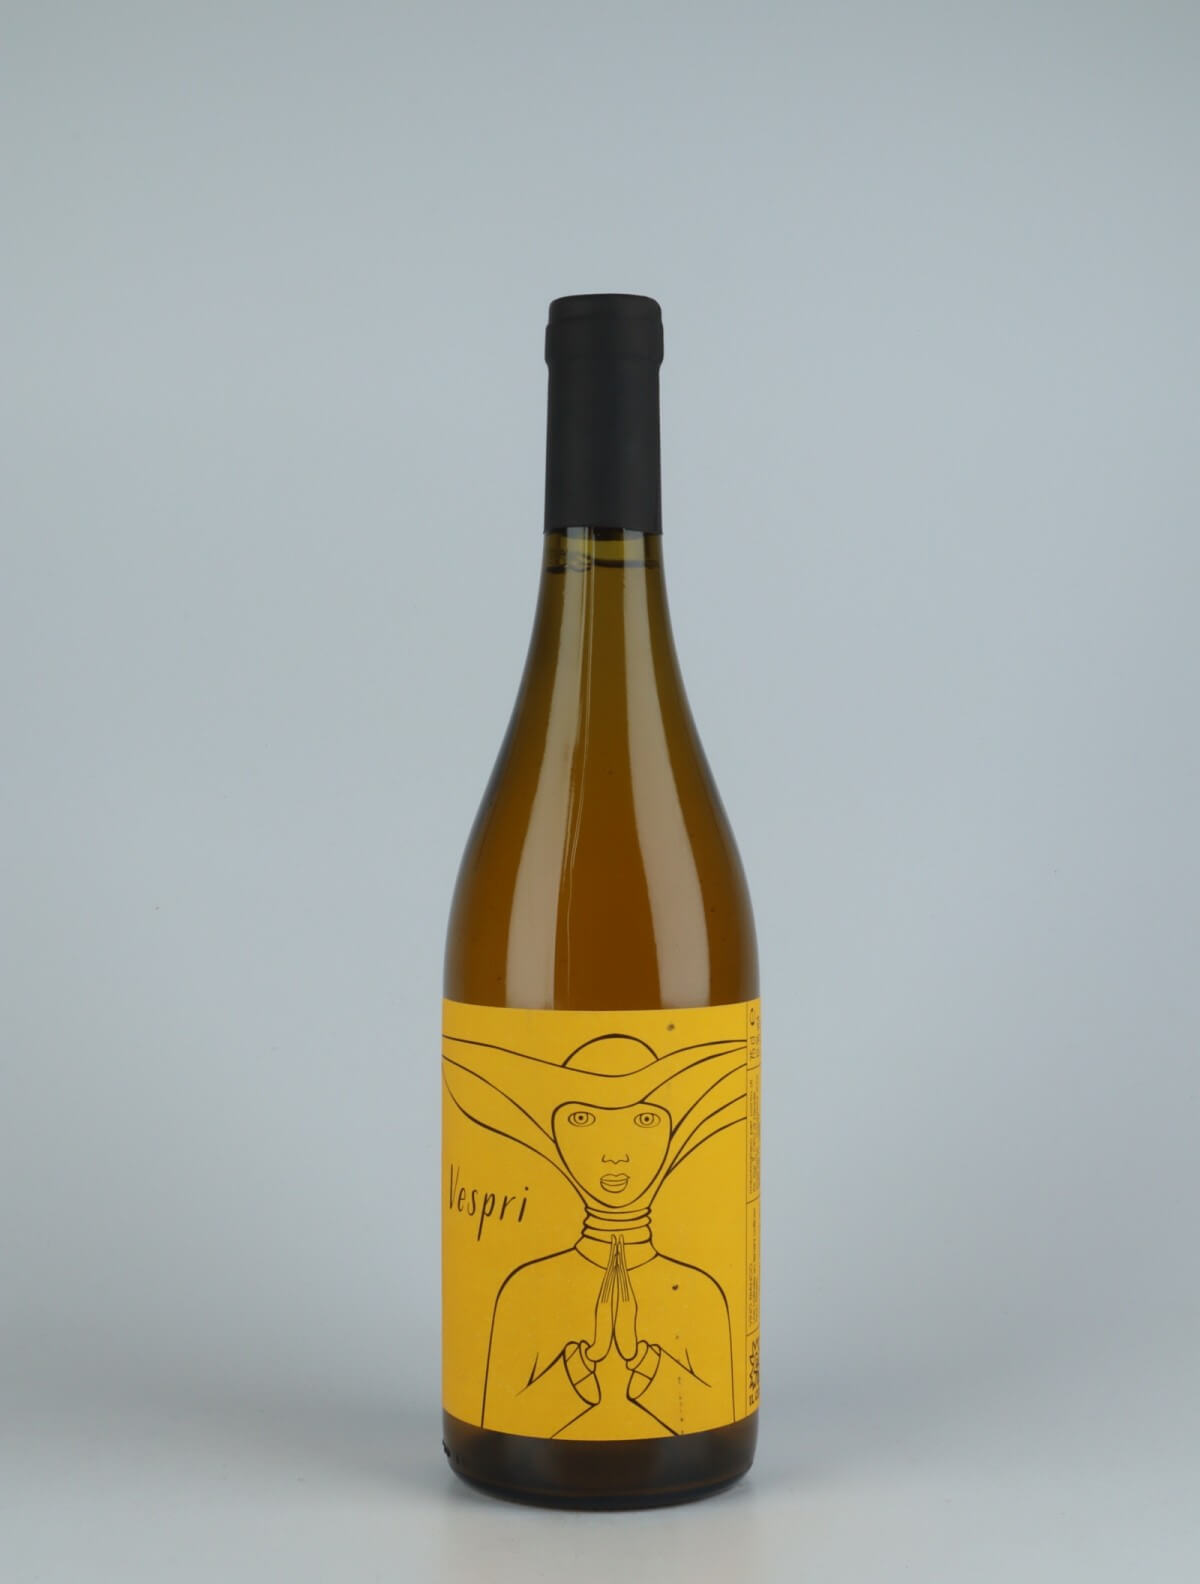 A bottle 2020 Vespri Orange wine from , Veneto in Italy